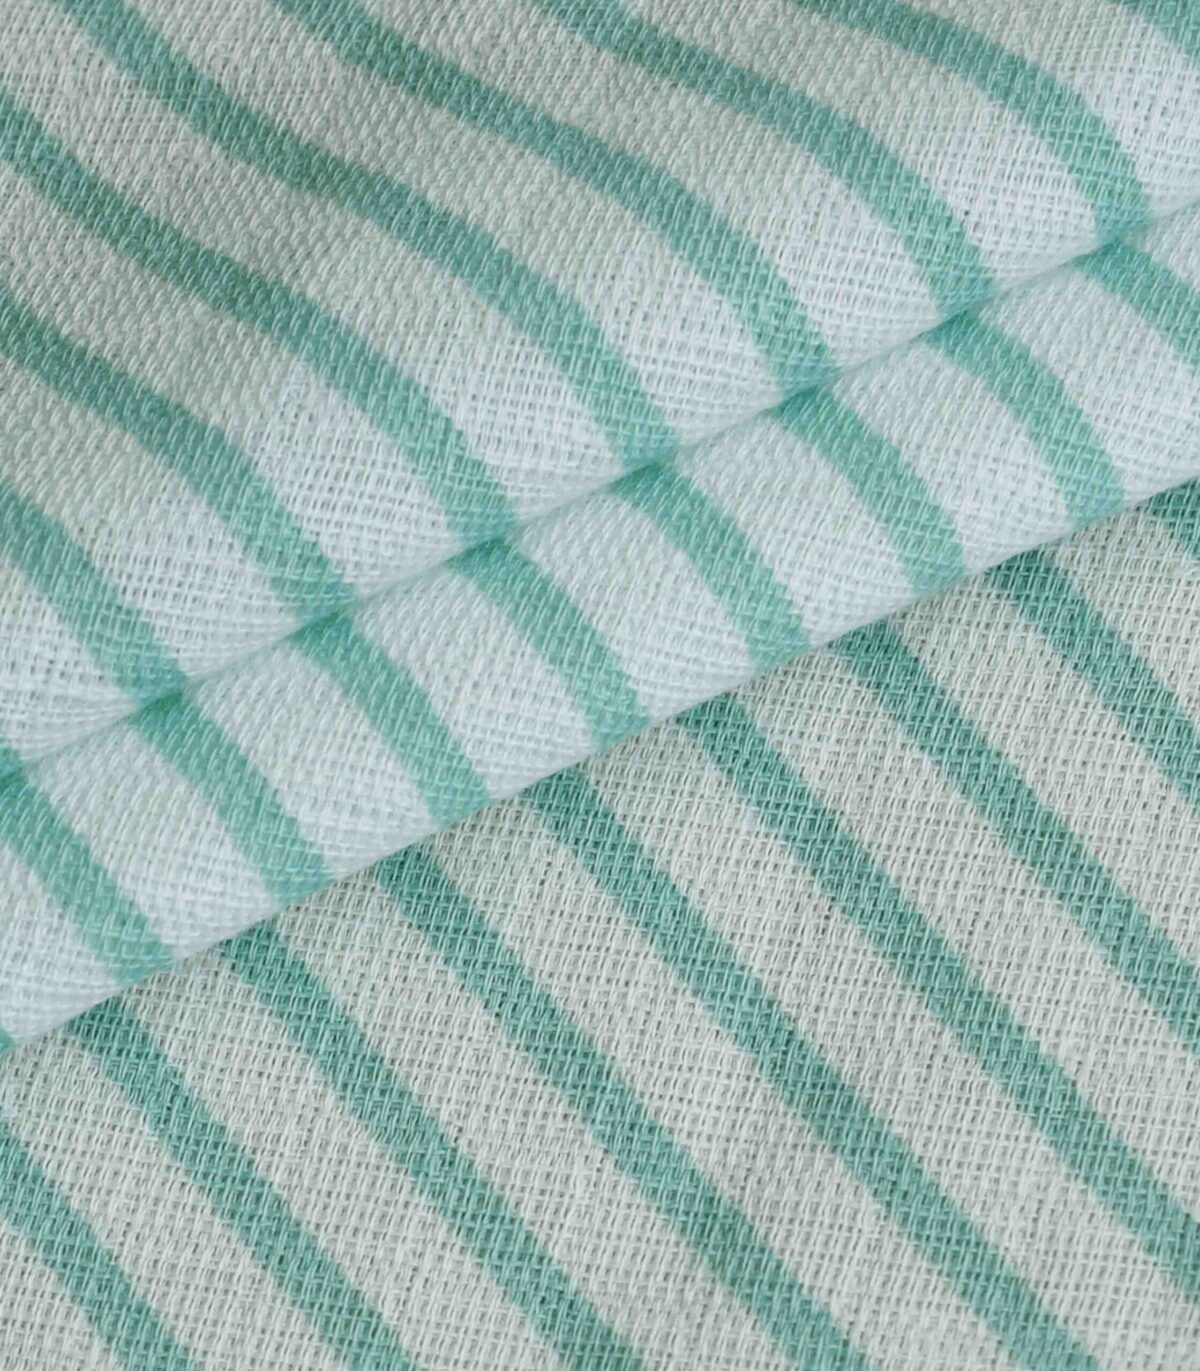 Cotton Diagonal Stripe Print Fabric